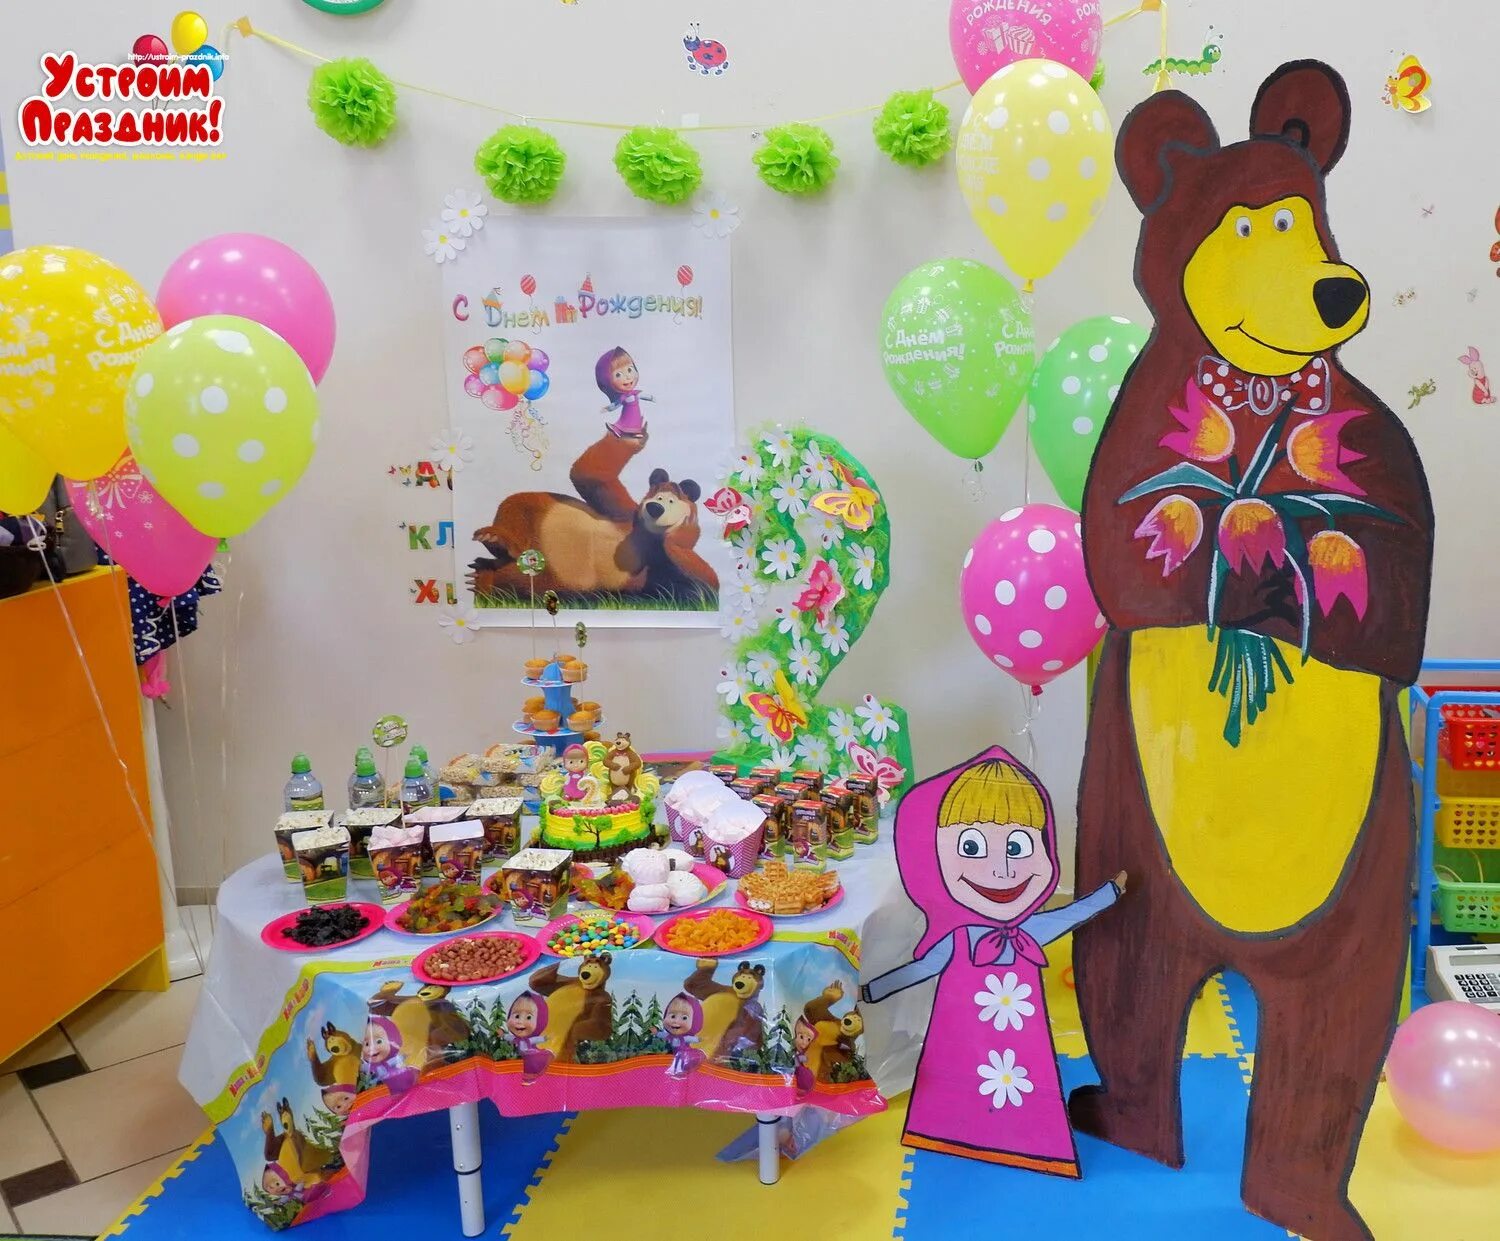 День рождения в стиле Маша и медведь. Украшение зала в стиле Маша и медведь. Детский день рождения в стиле Маша и медведь. Фотощона в стиле Маша и медведь.